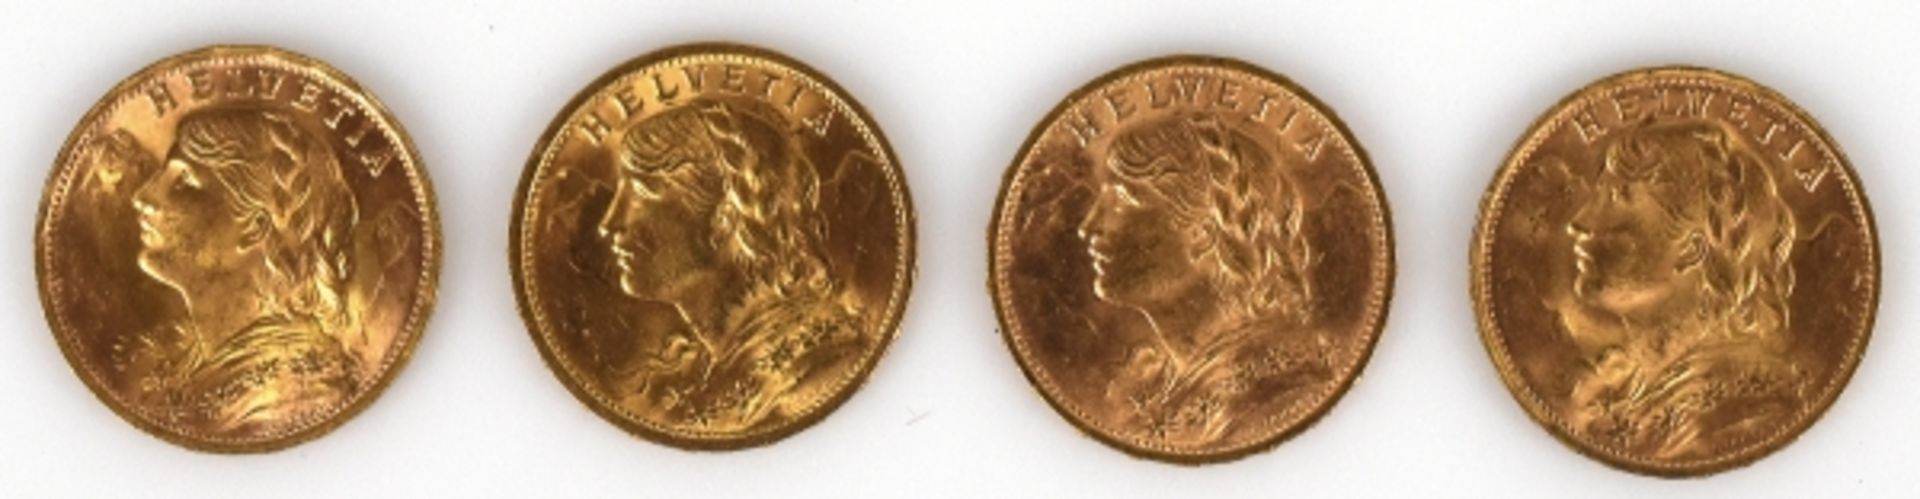 4 GOLDMÜNZEN 20Fr. (Vreneli), Schweiz, 1912, 1935, 1947, 1930, gesamt 25,79g - Bild 2 aus 2